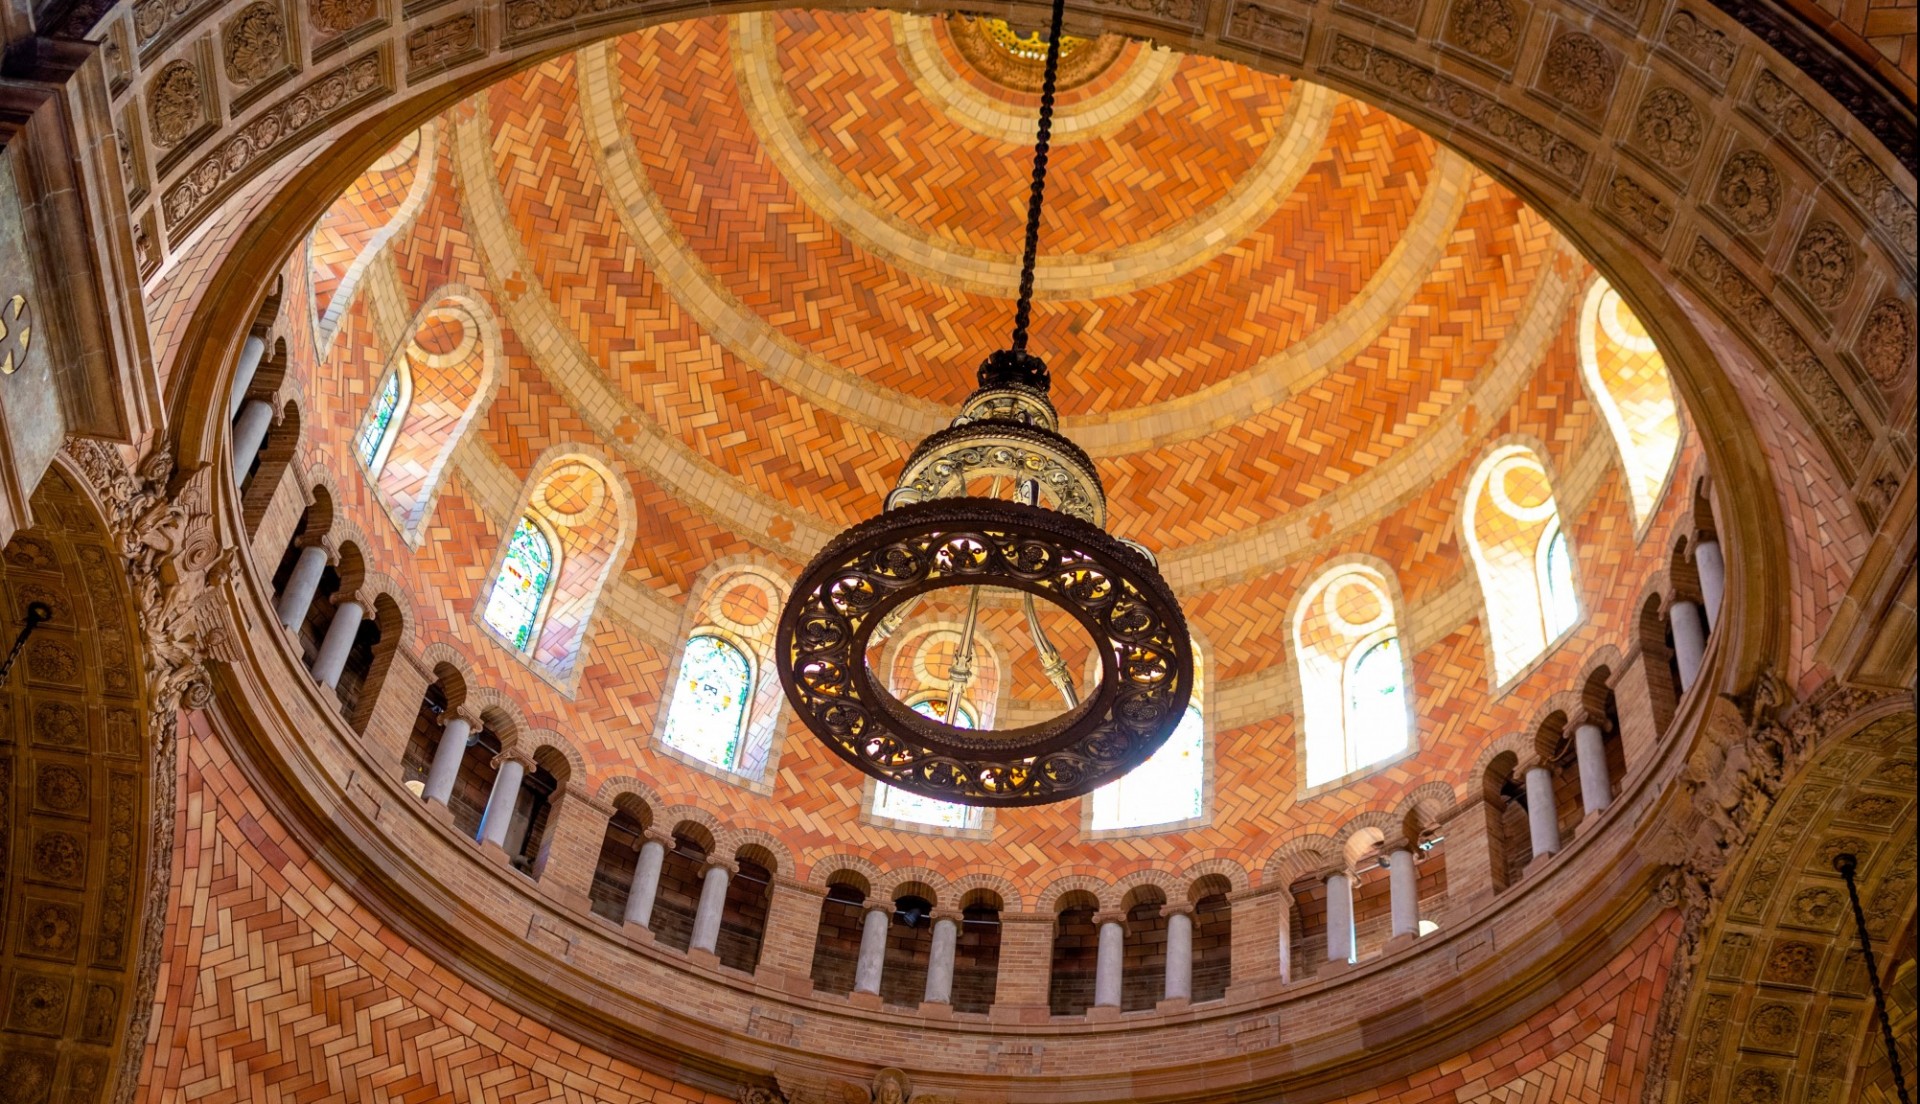 Saint Paul's Chapel's unique tile-work dome.